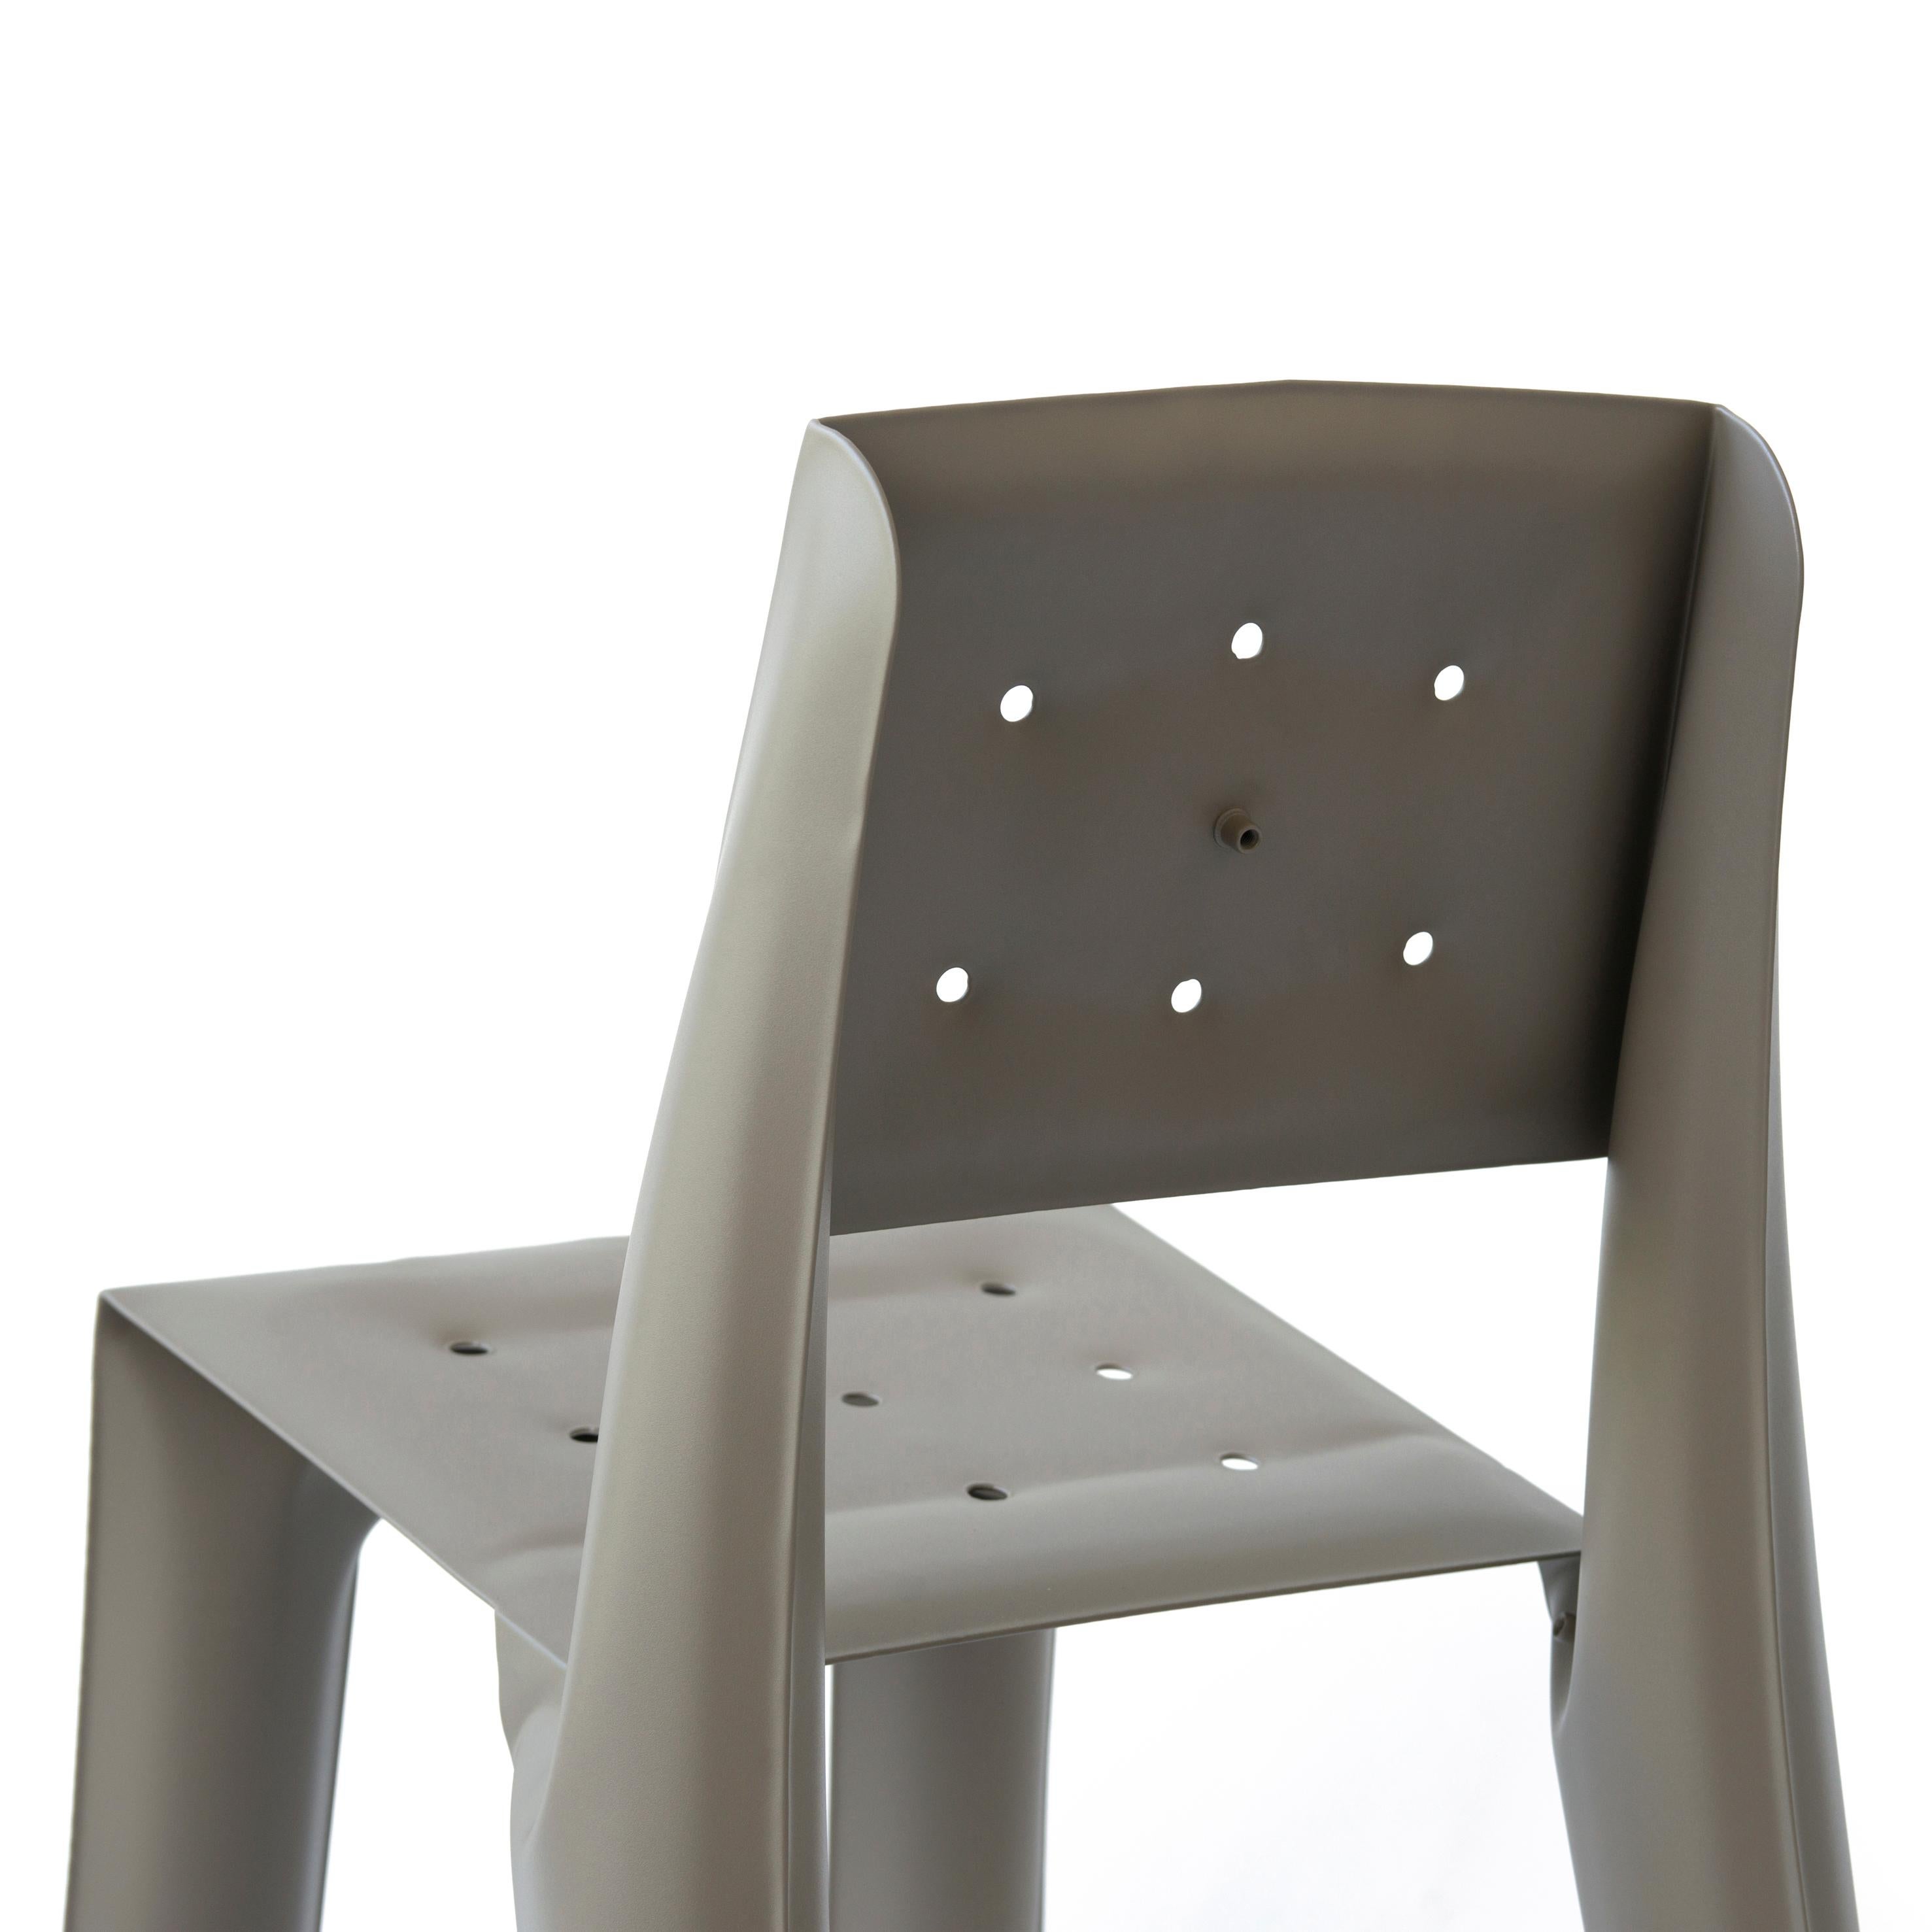 Beige Carbon Steel Chippensteel 0.5 Sculptural Chair by Zieta For Sale 2